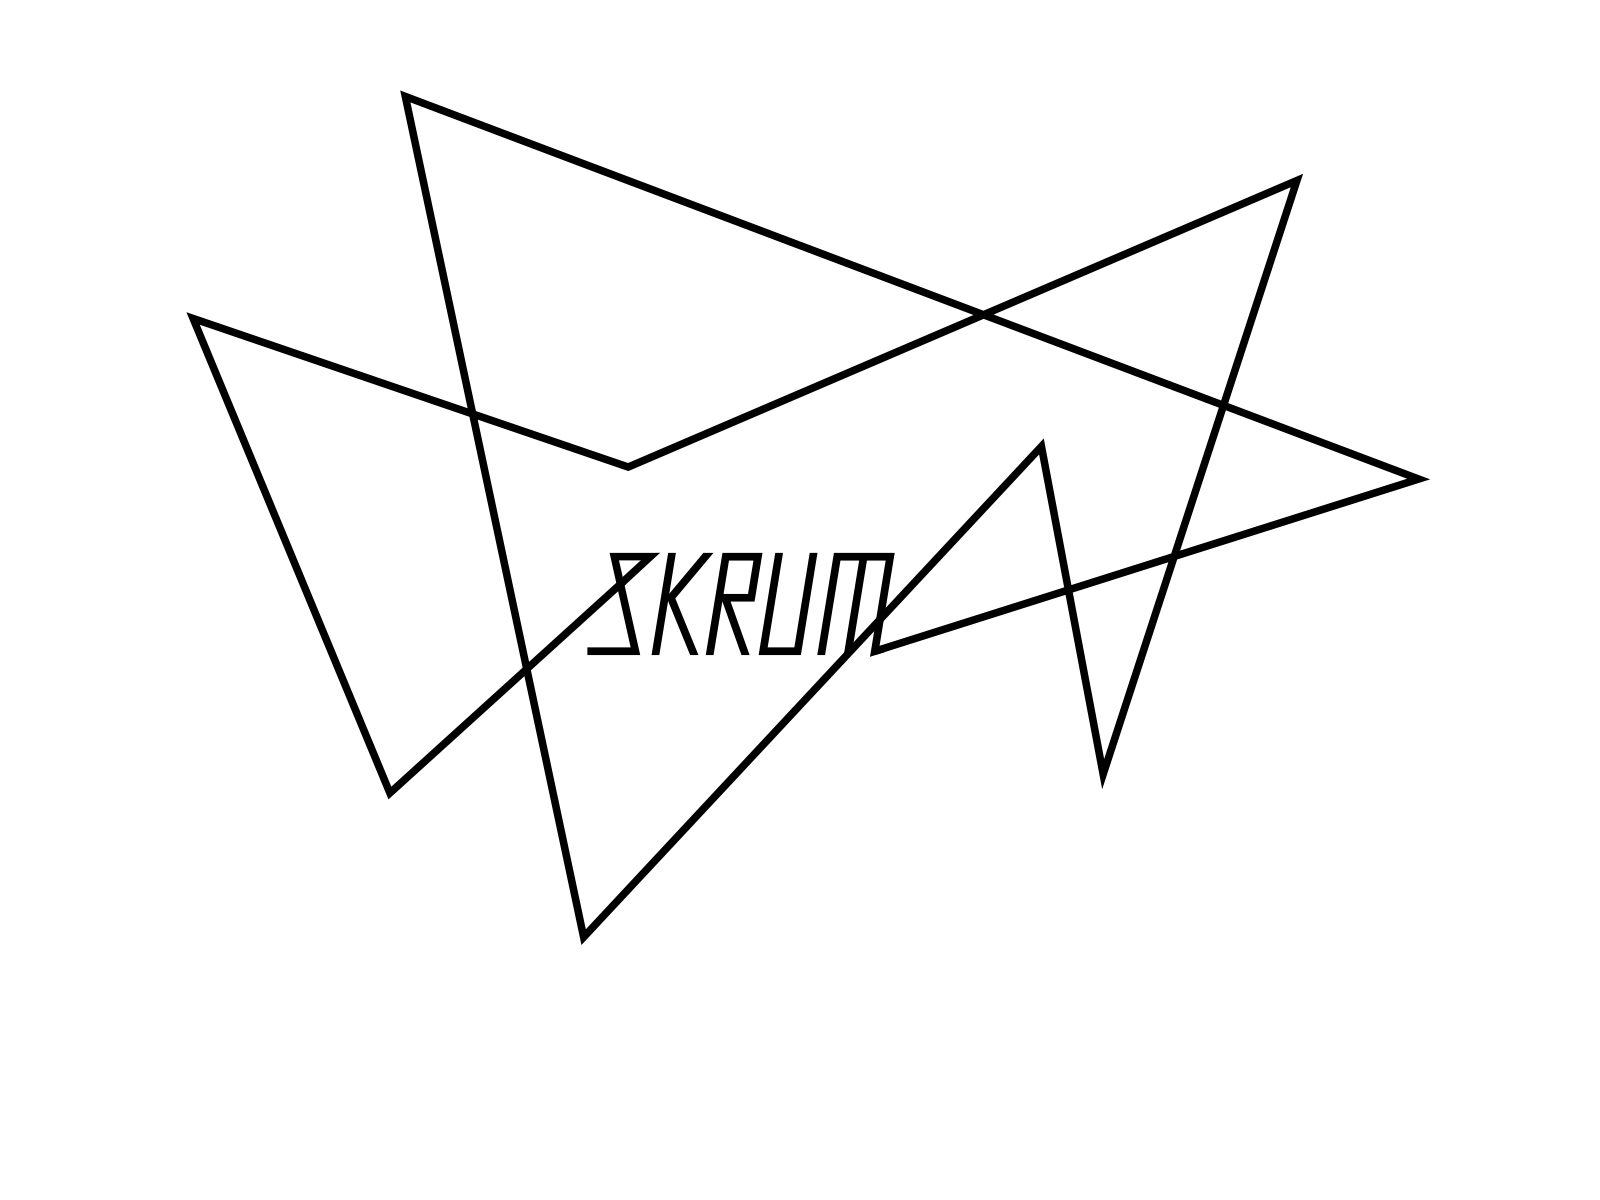 SKRUM design graphic graphic design logo logotype vector